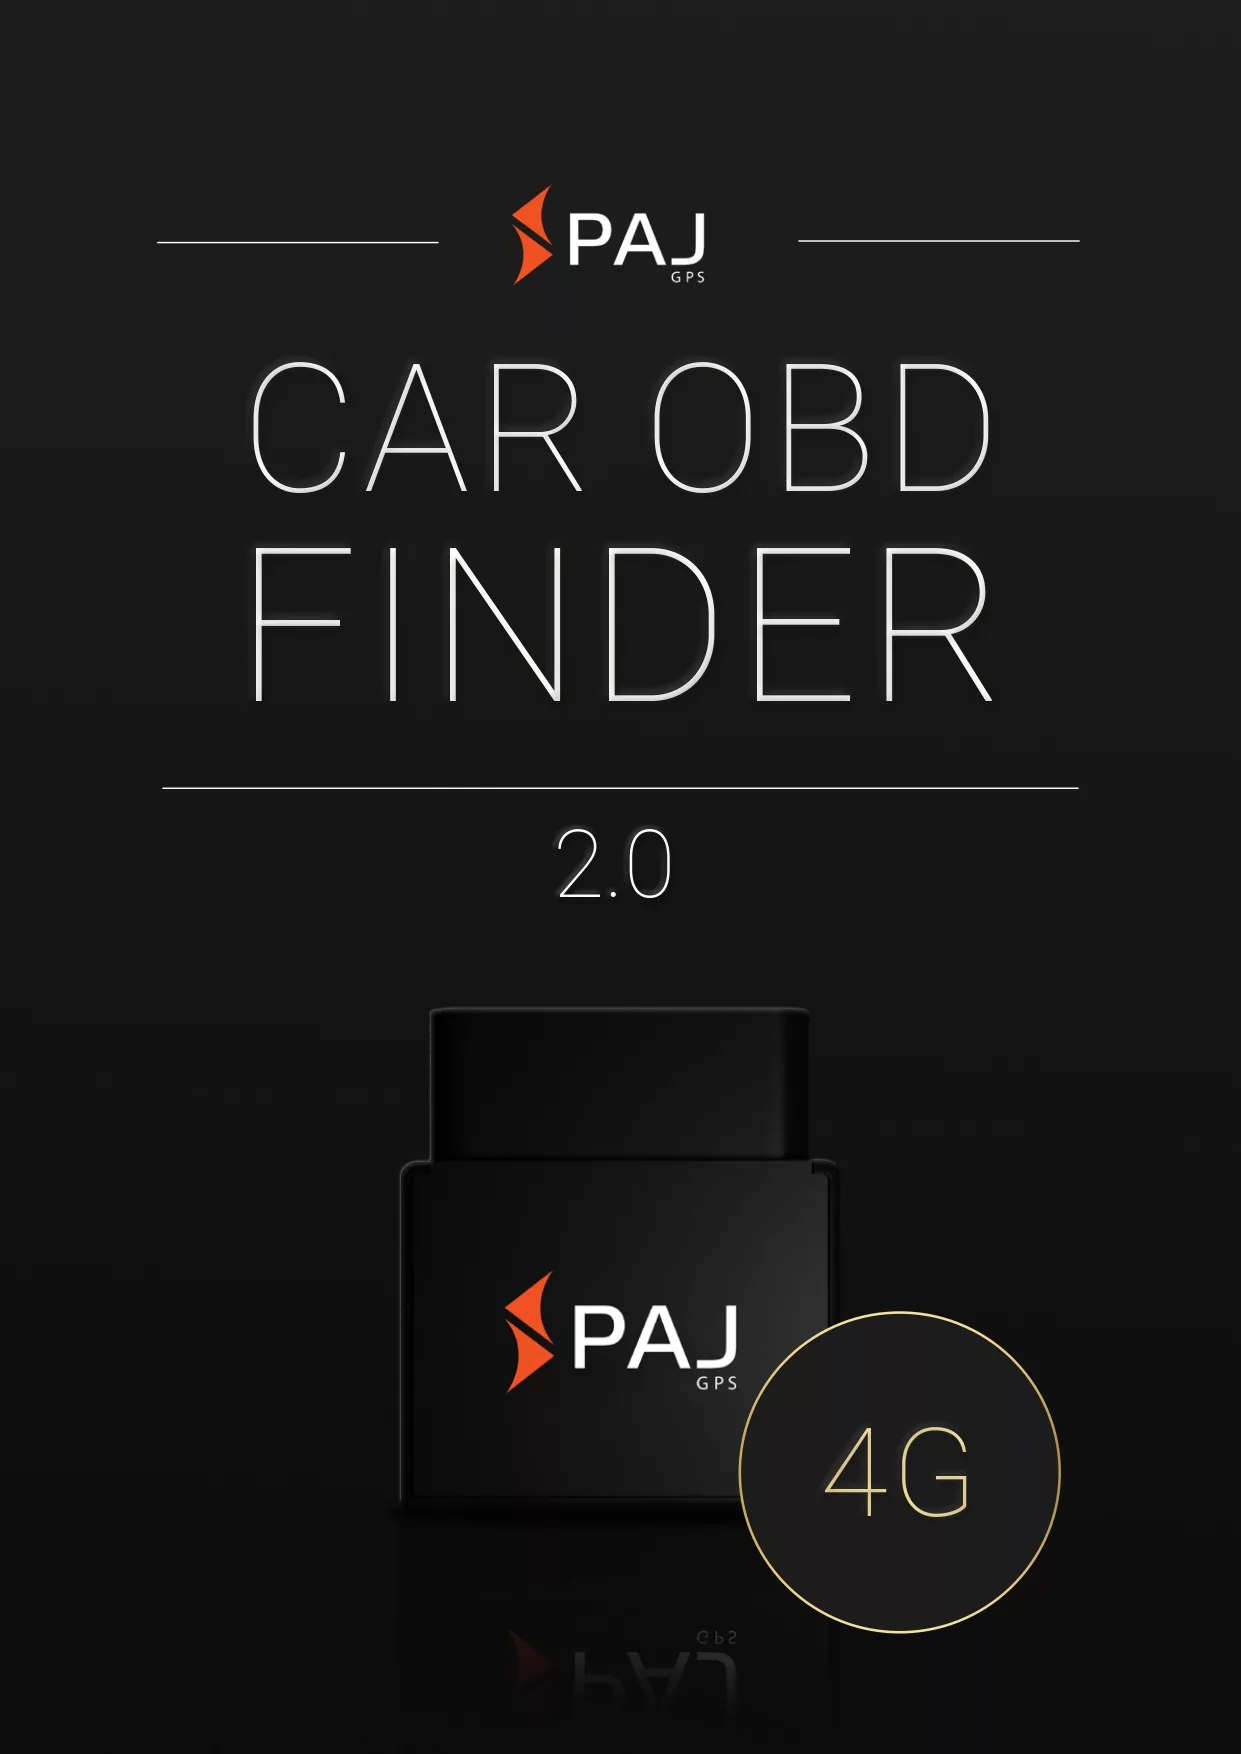 Immagine di copertina per instruzione d'uso CAR OBD Finder 4G 2.0